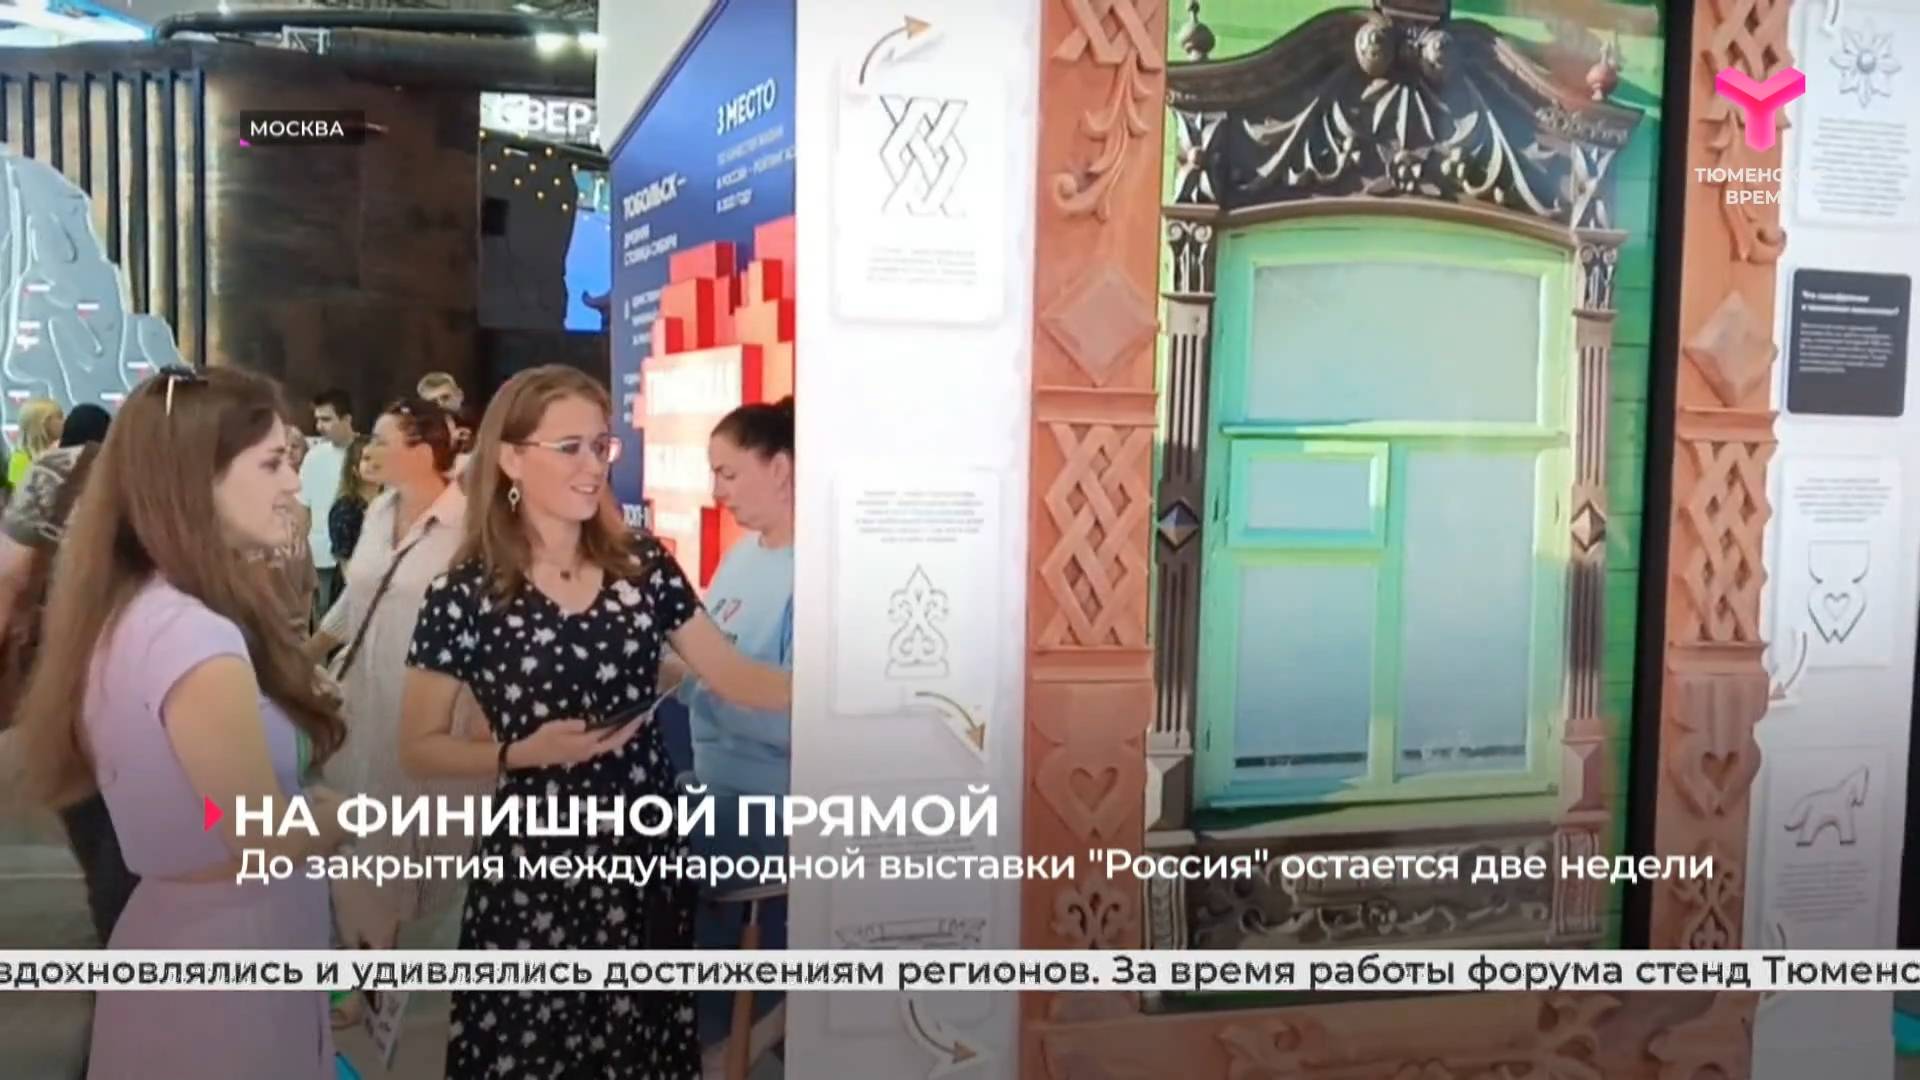 До закрытия Международной выставки "Россия" остаётся две недели